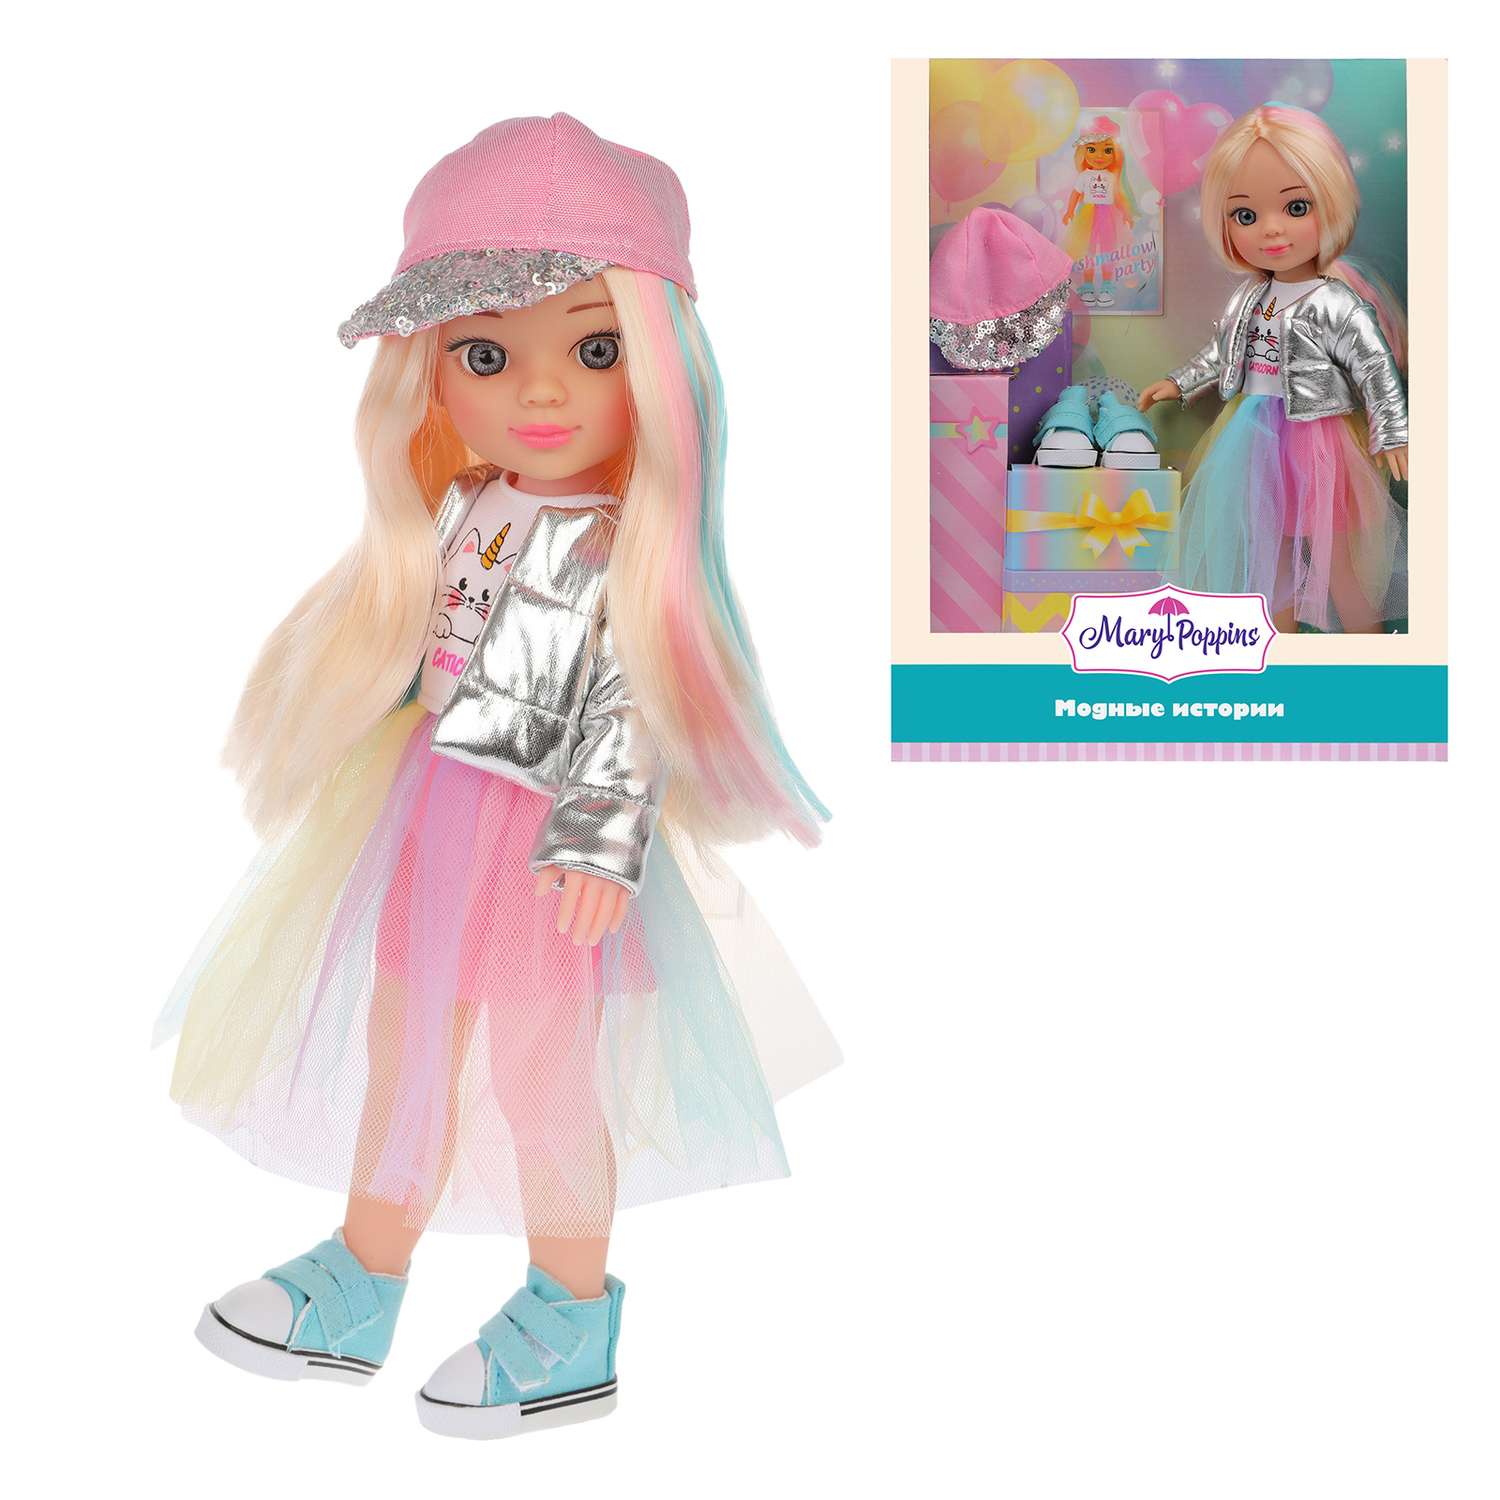 Кукла для девочки Mary Poppins Модные истории. Королева вечеринок 31 см 451348 - фото 1